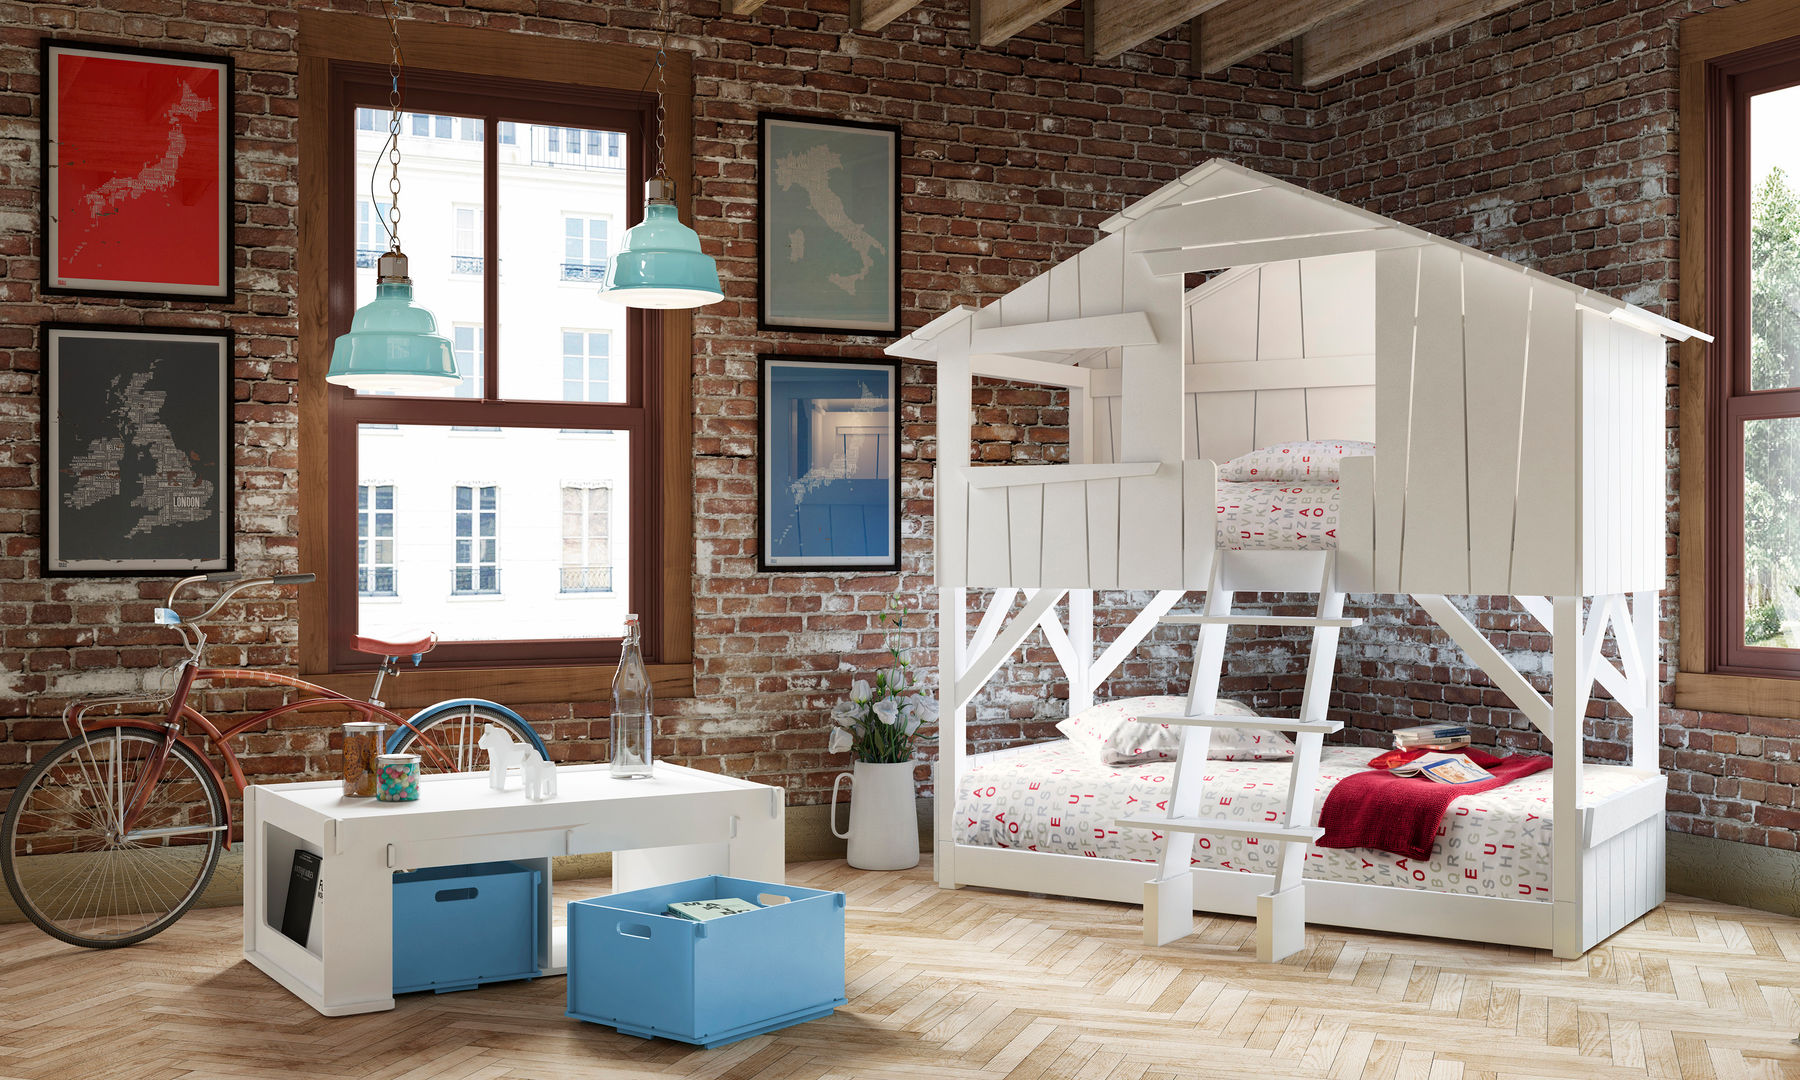 KIDS TREEHOUSE BEDROOM BUNKBED in White Cuckooland Modern Bedroom